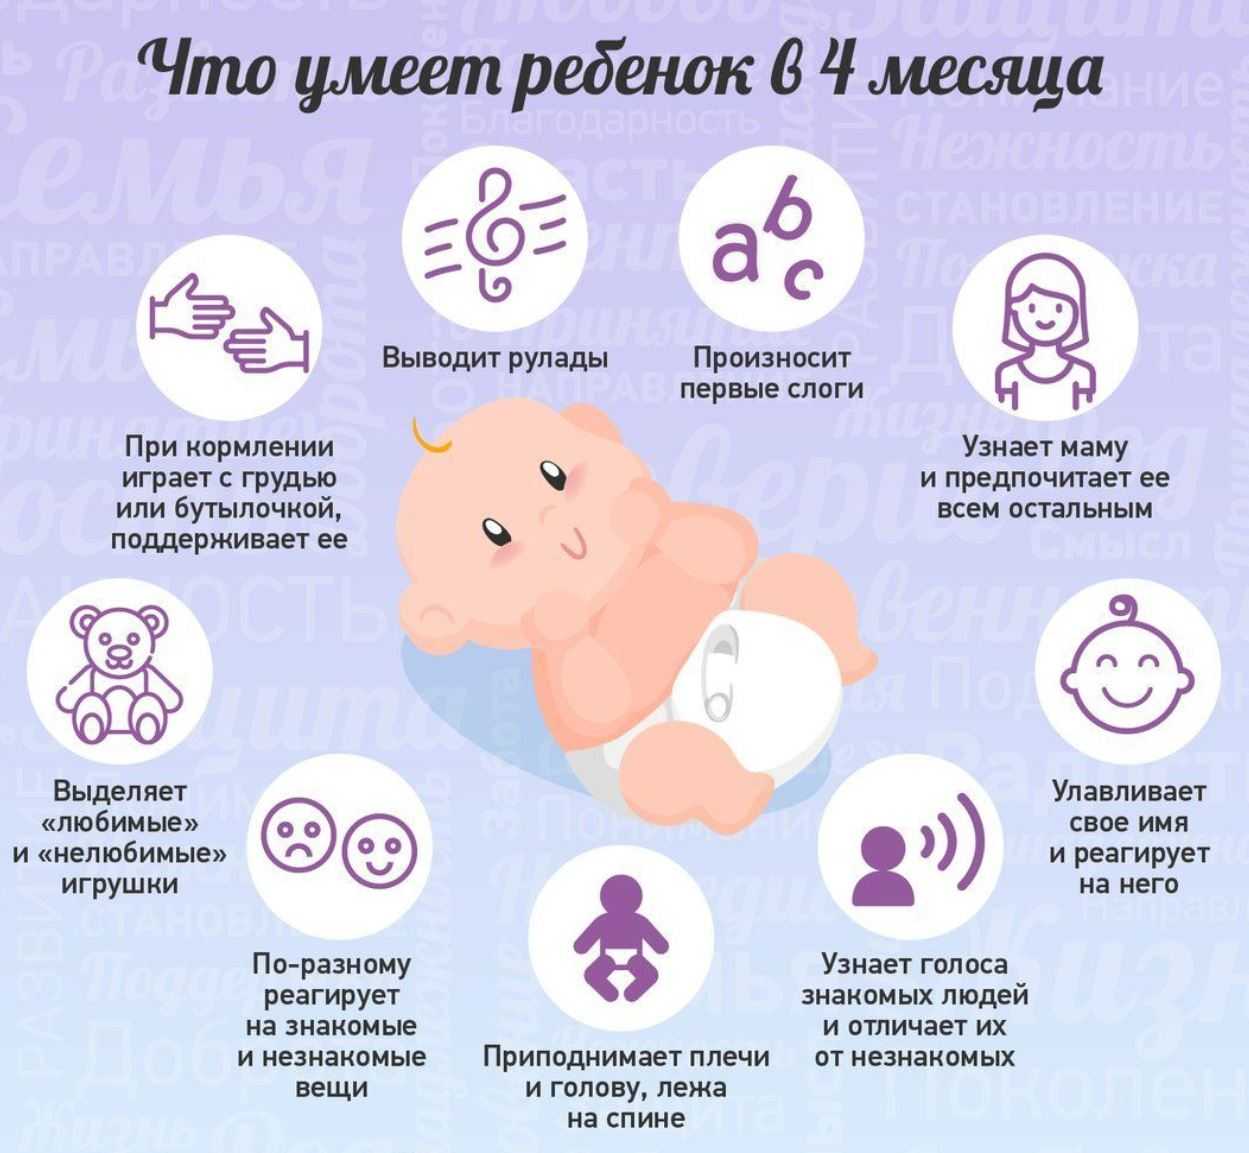 Вес ребенка при рождении: нормы и отклонения - новорожденный. ребенок до года